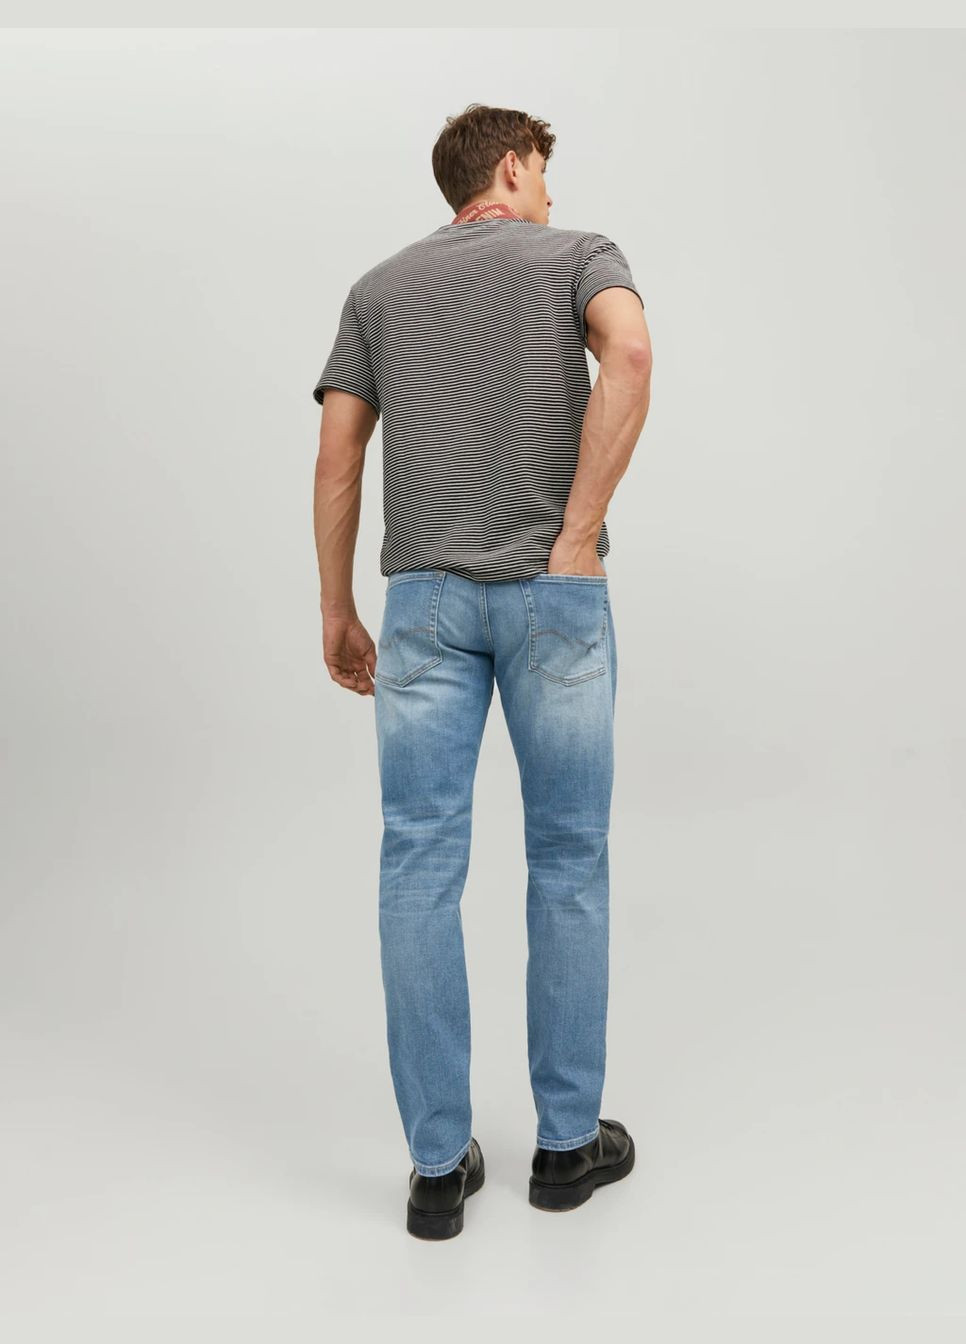 Голубые демисезонные джинсы Mike Original JOS 011 PCW Comfort fit 12209630 JACK&JONES